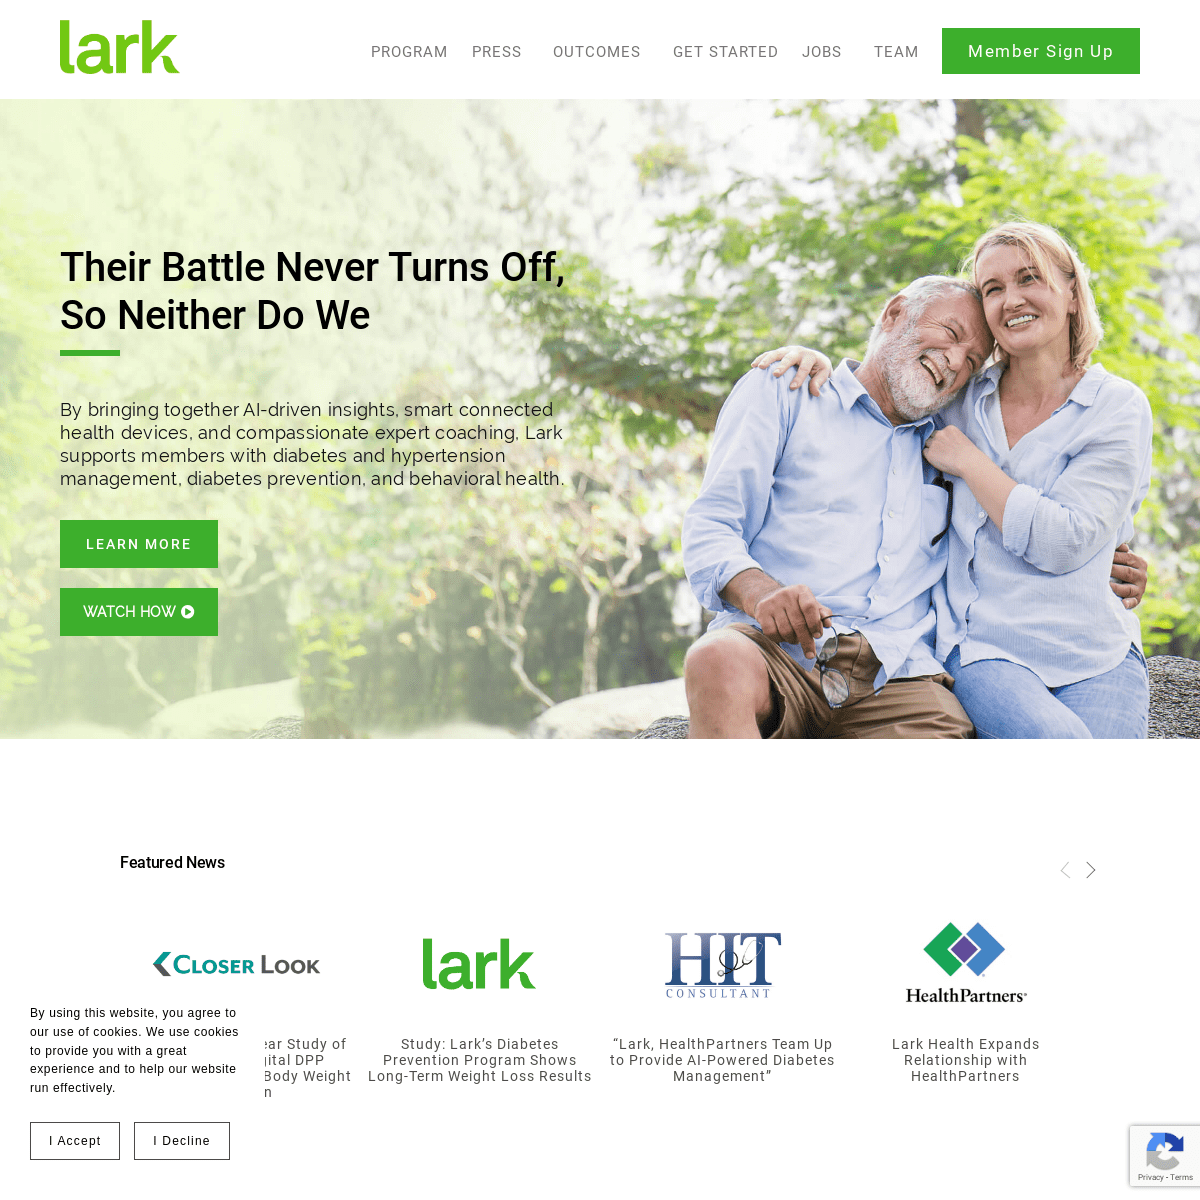 A complete backup of lark.com